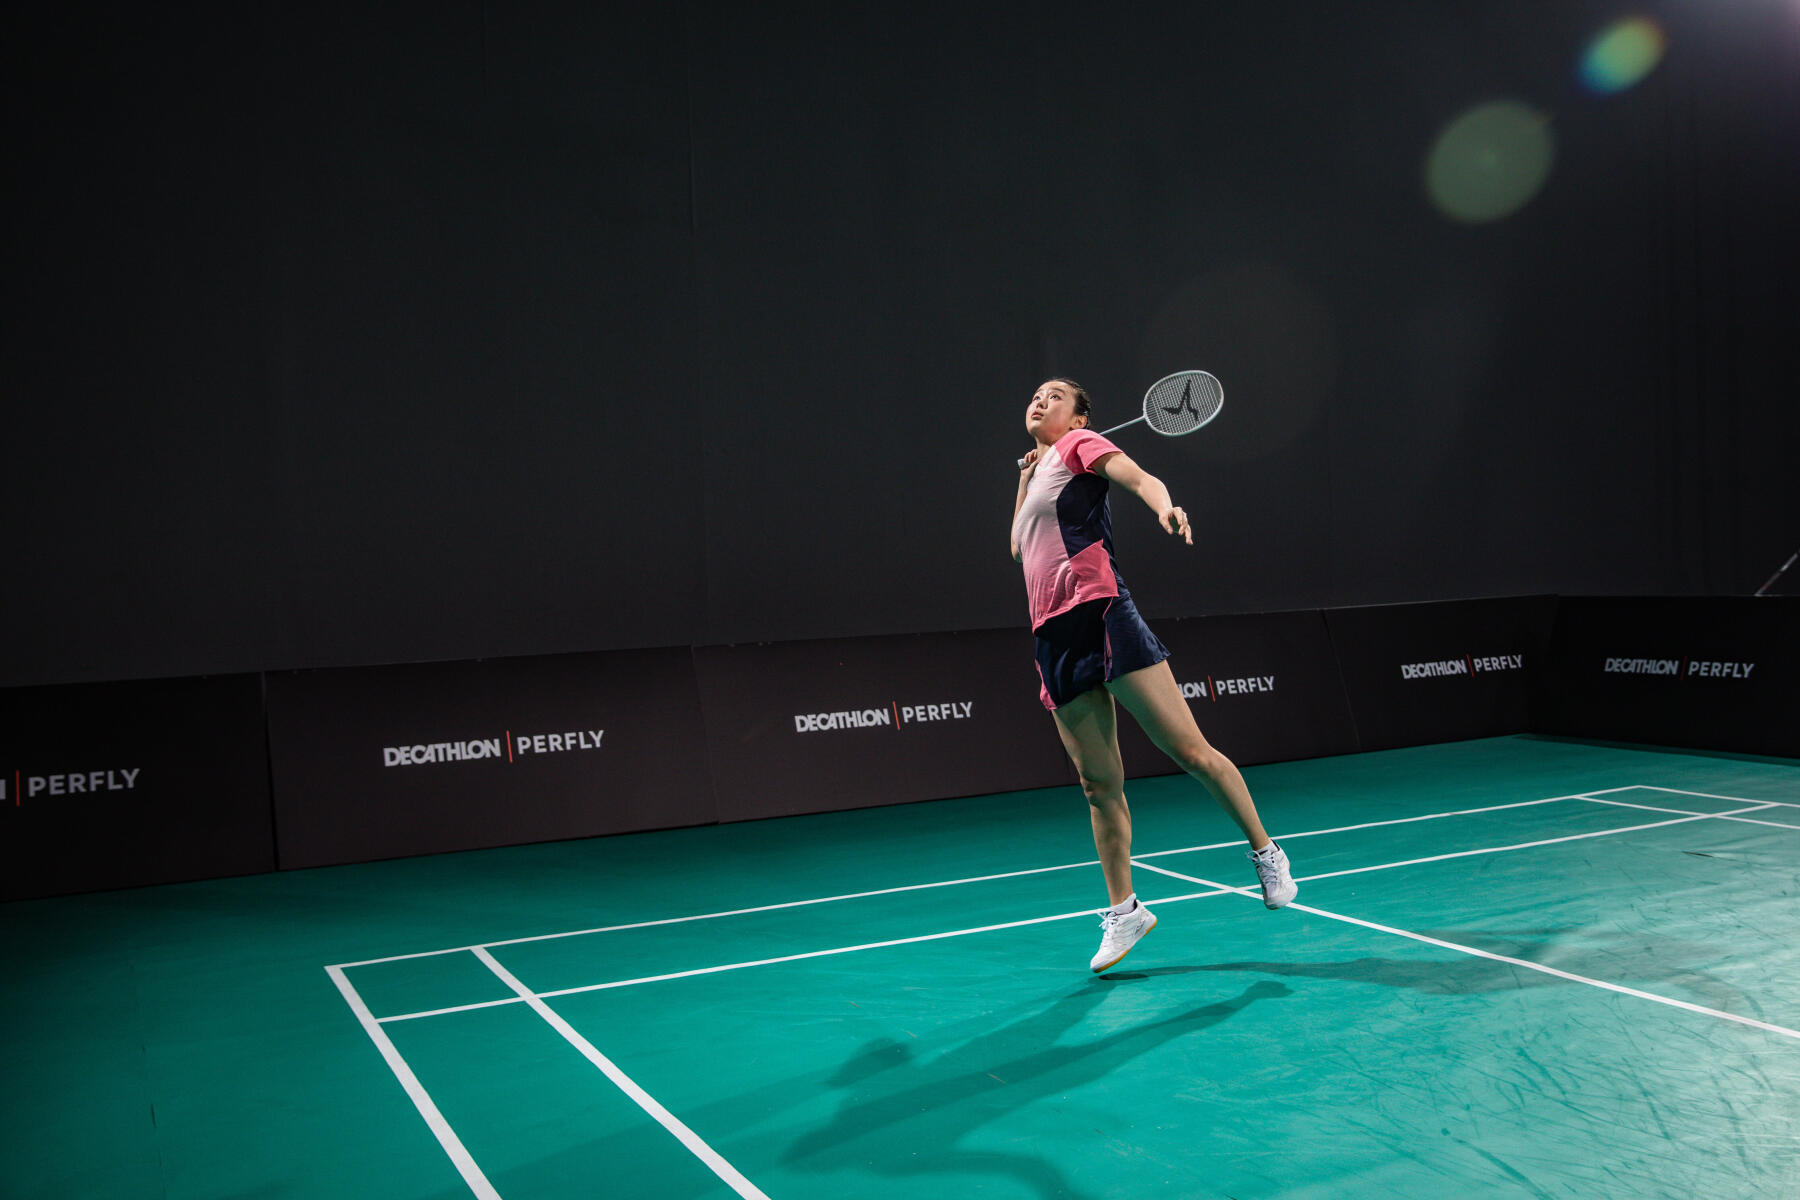 voordelen van badminton - flexibiliteit